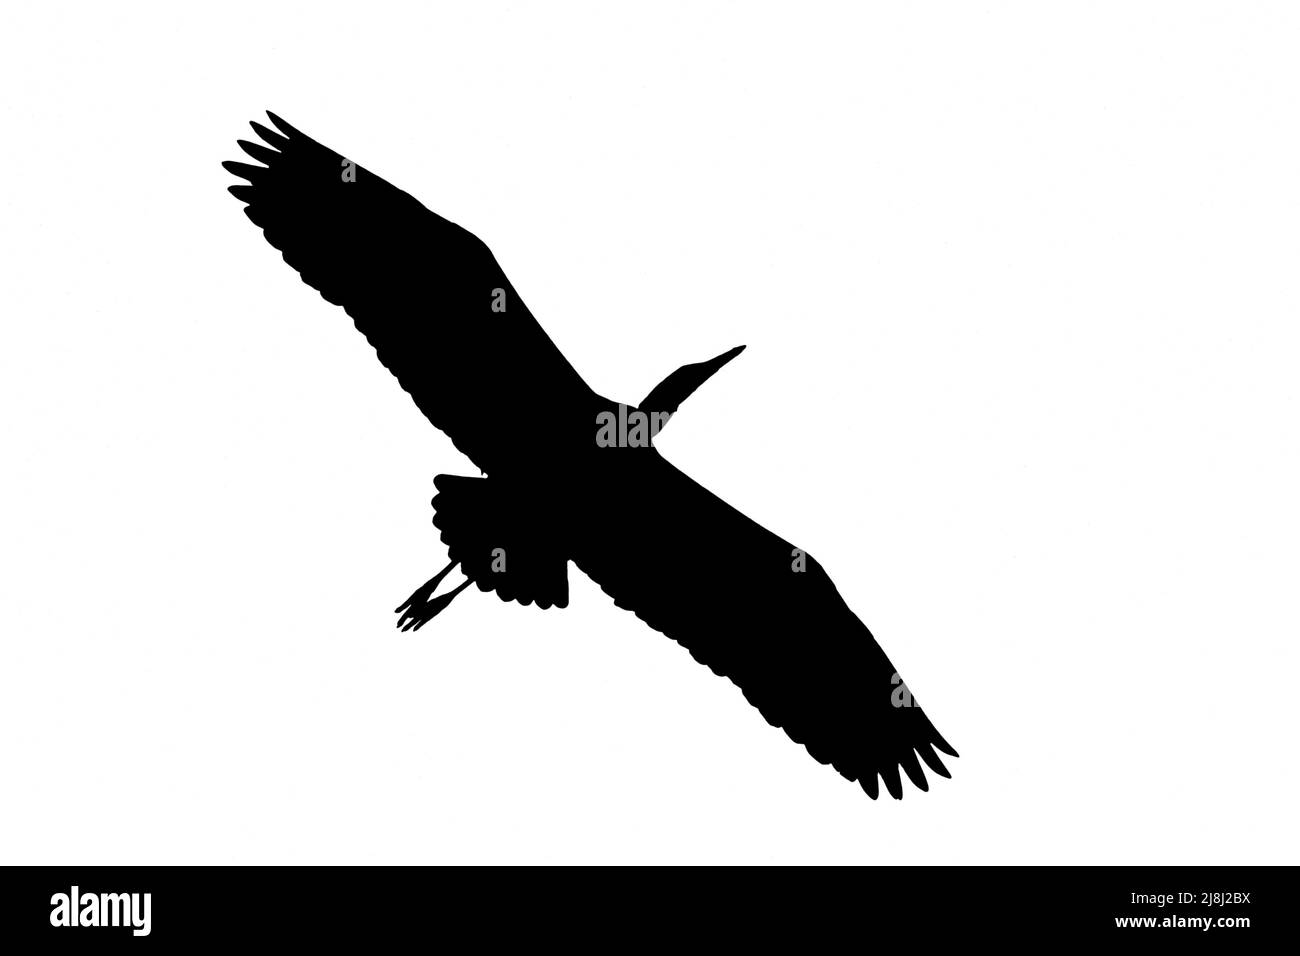 Silueta de garza gris / garza gris (Ardea cinerea) en vuelo contorneado sobre fondo blanco para mostrar alas, cabeza y cola formas Foto de stock